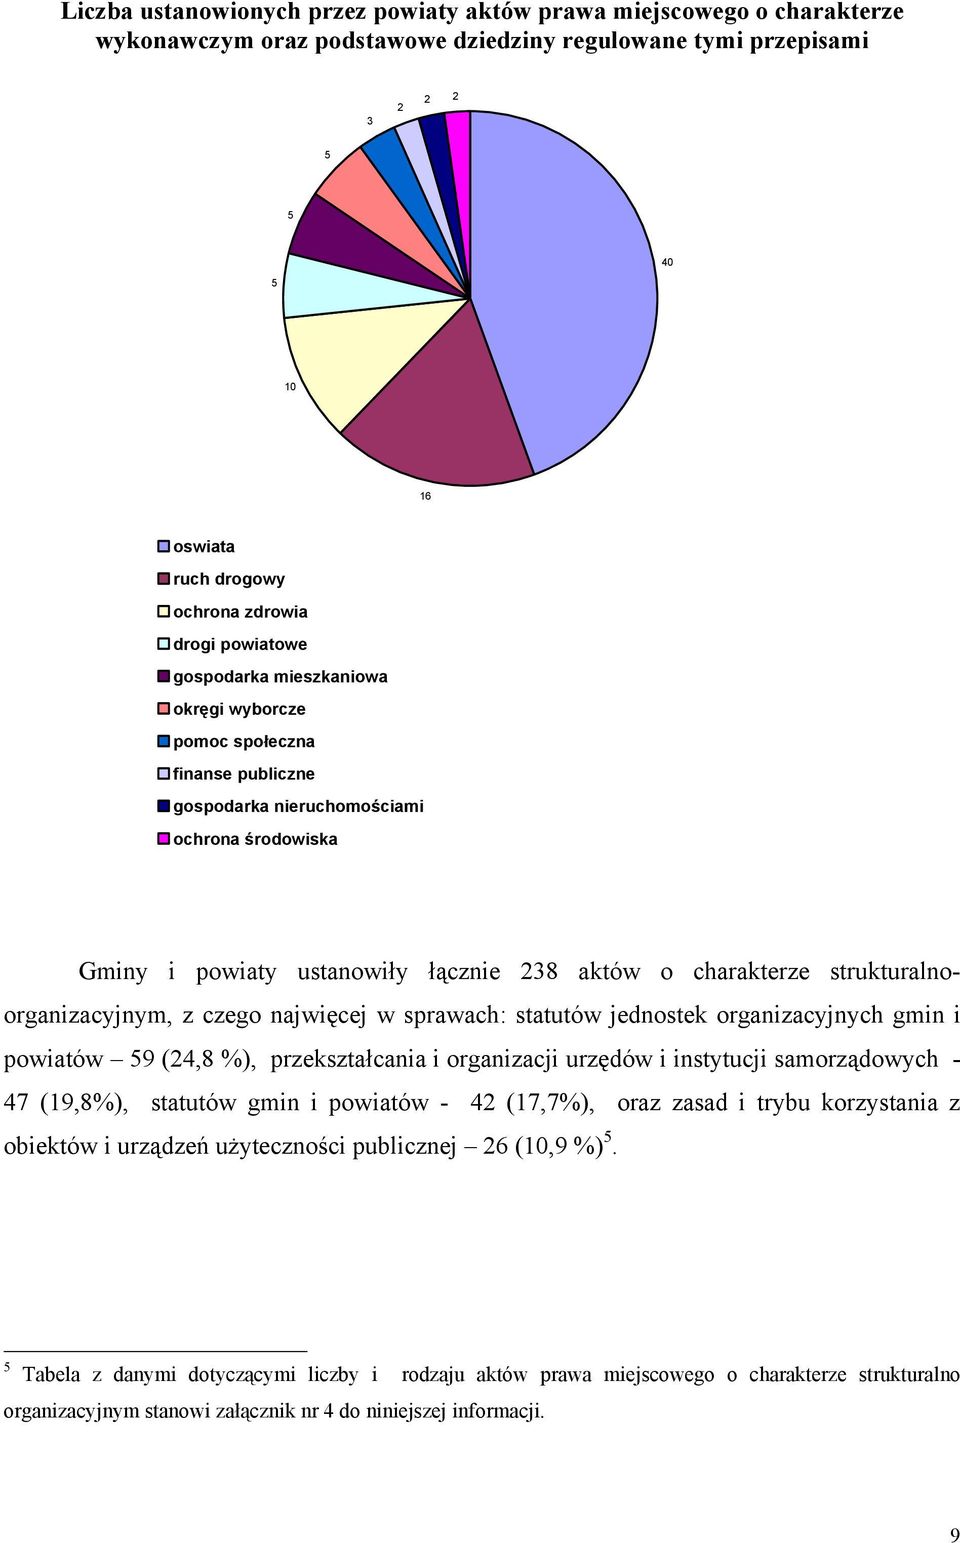 strukturalnoorganizacyjnym, z czego najwięcej w sprawach: statutów jednostek organizacyjnych gmin i powiatów 59 (24,8 %), przekształcania i organizacji urzędów i instytucji samorządowych - 47